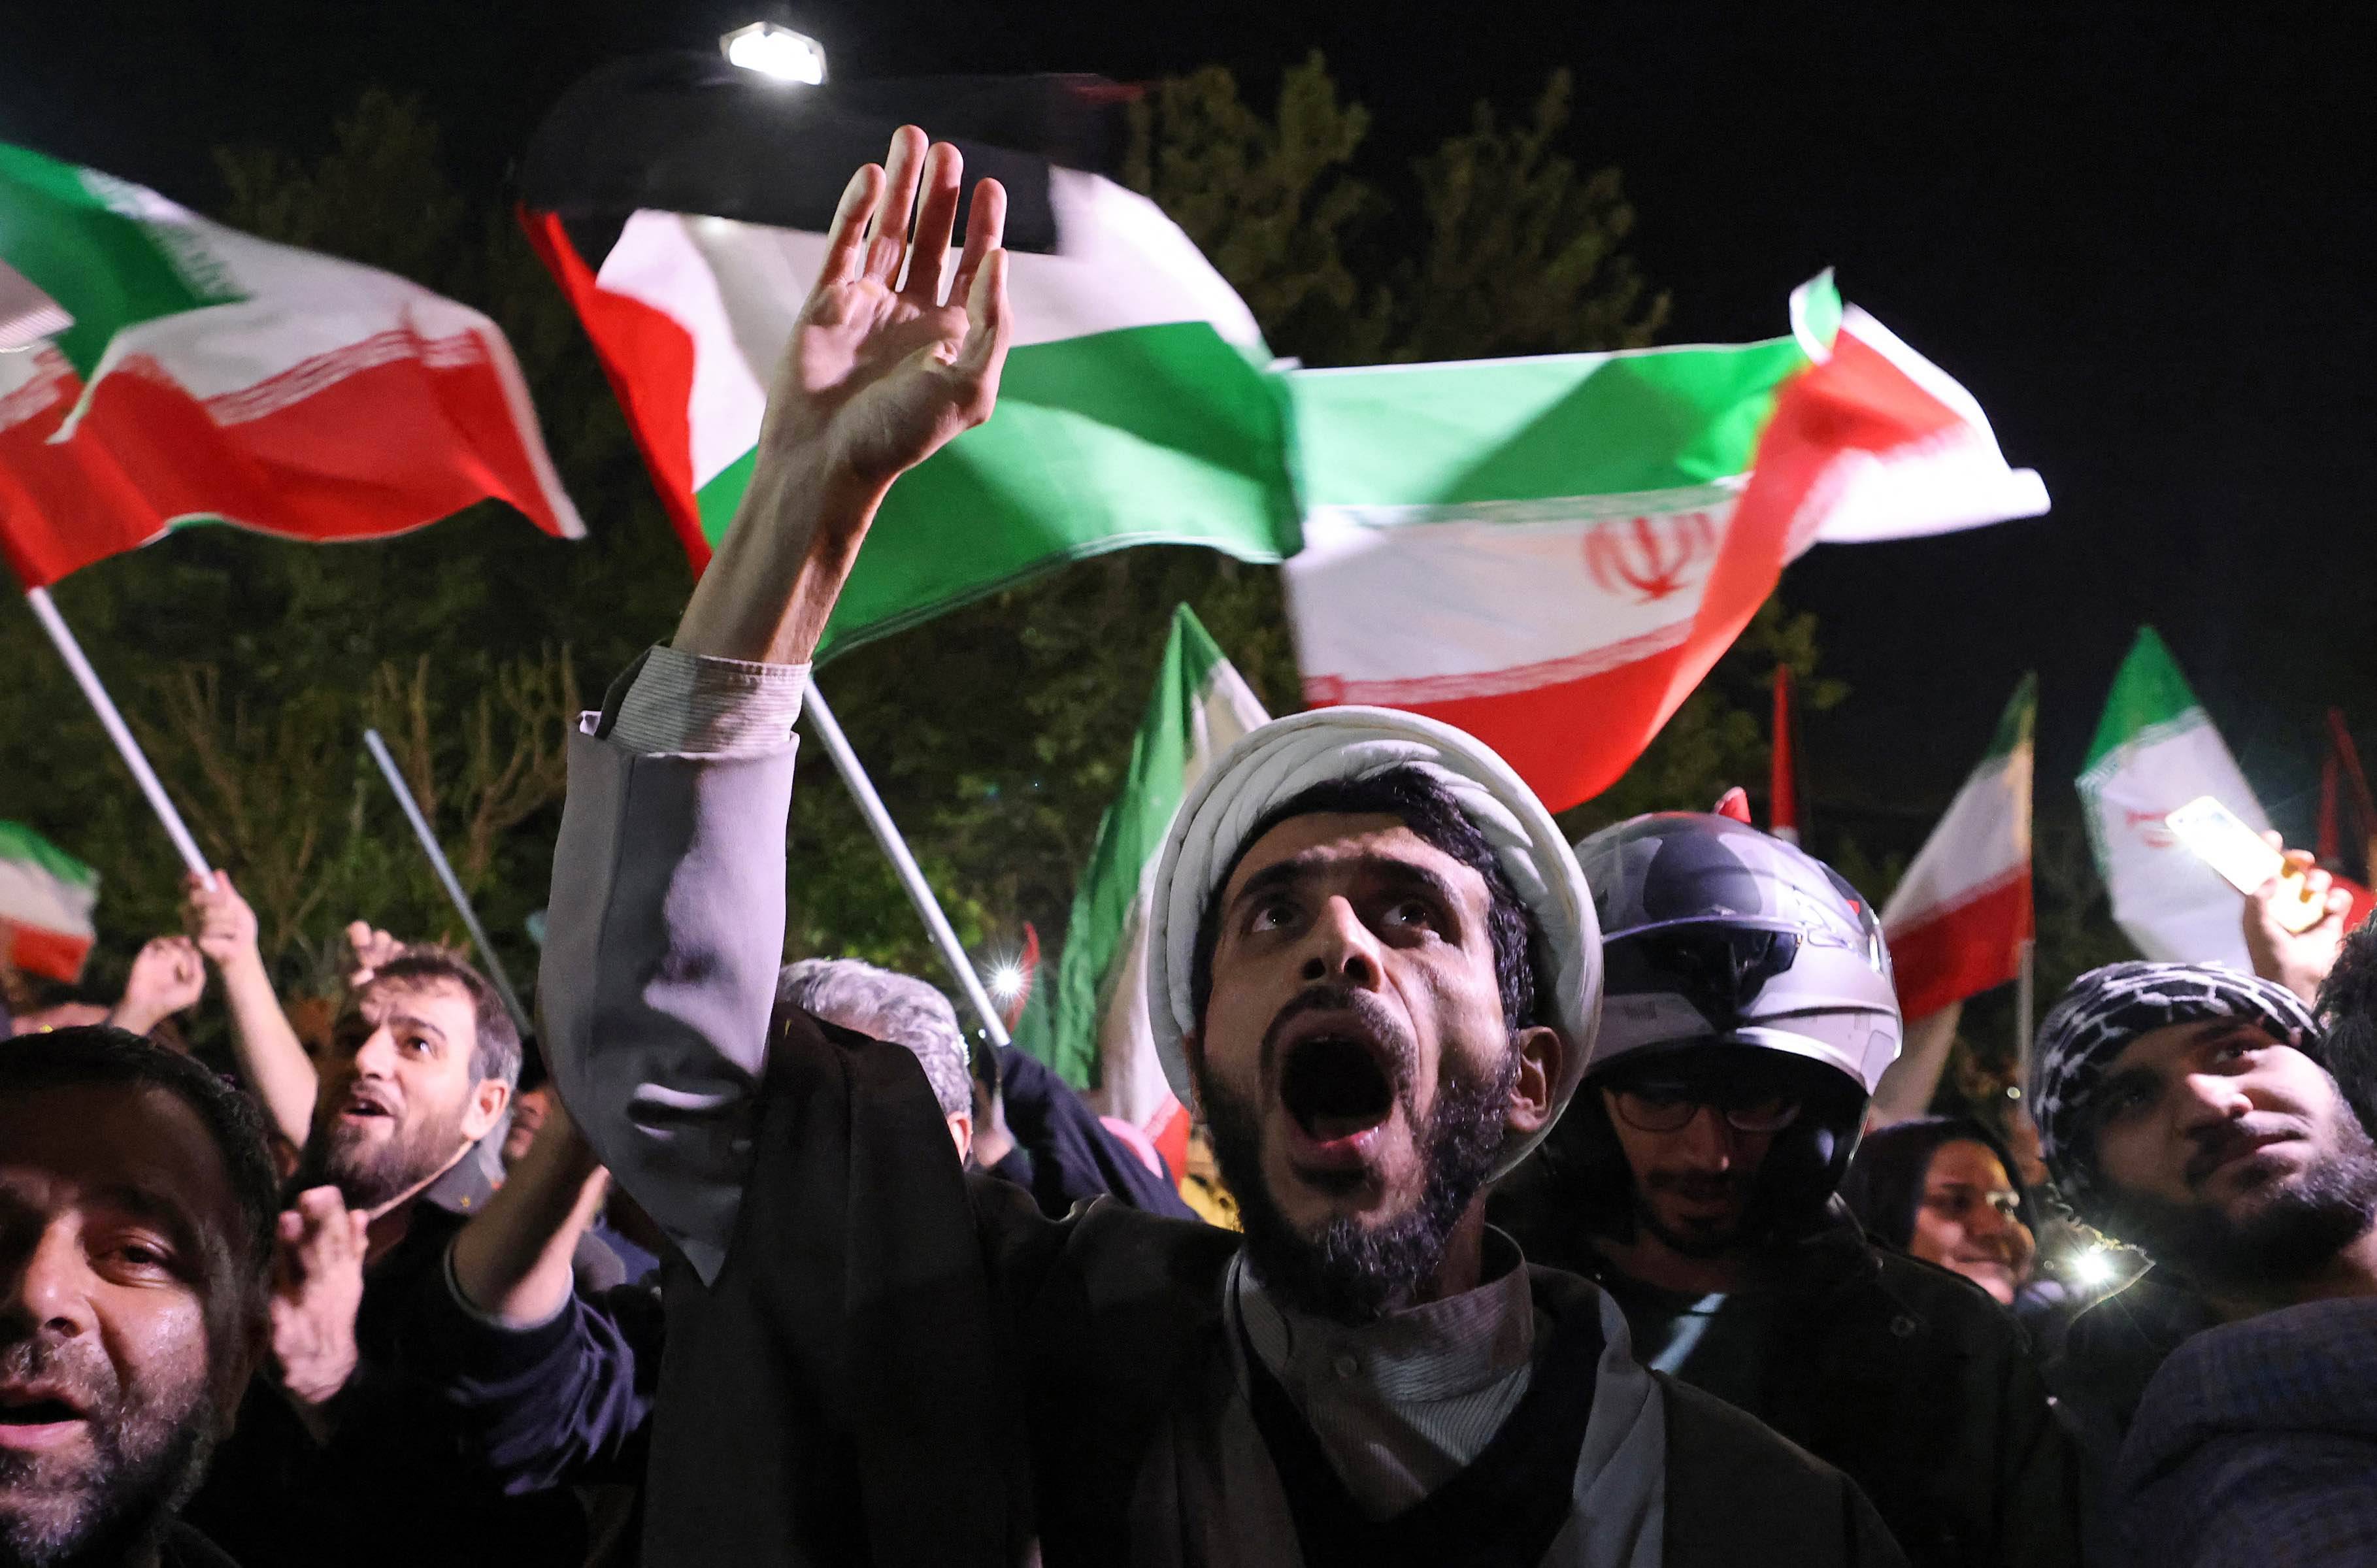 Tłum manifestantów z irańskimi flagami na ulicy w Teheranie przed Ambasadą Brytyjską. Mężczyzna na pierwszy planie wznosi dłoń i krzyczy. Atak Iranu